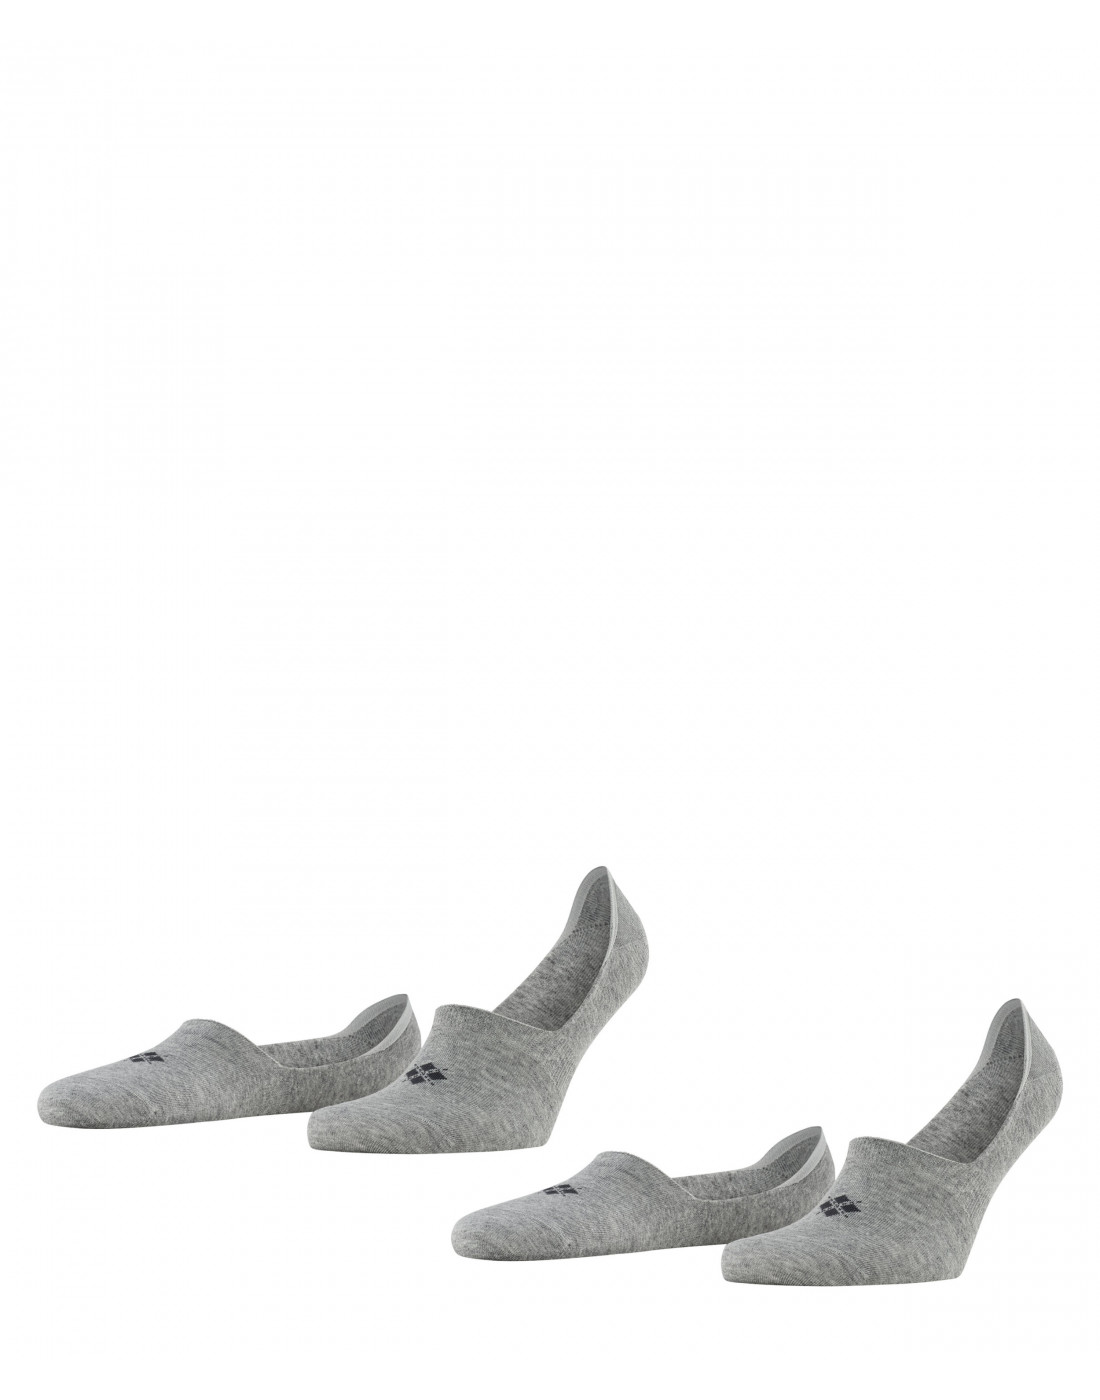 Носки серые мужские (2 пары) Falke S21072/3400-1